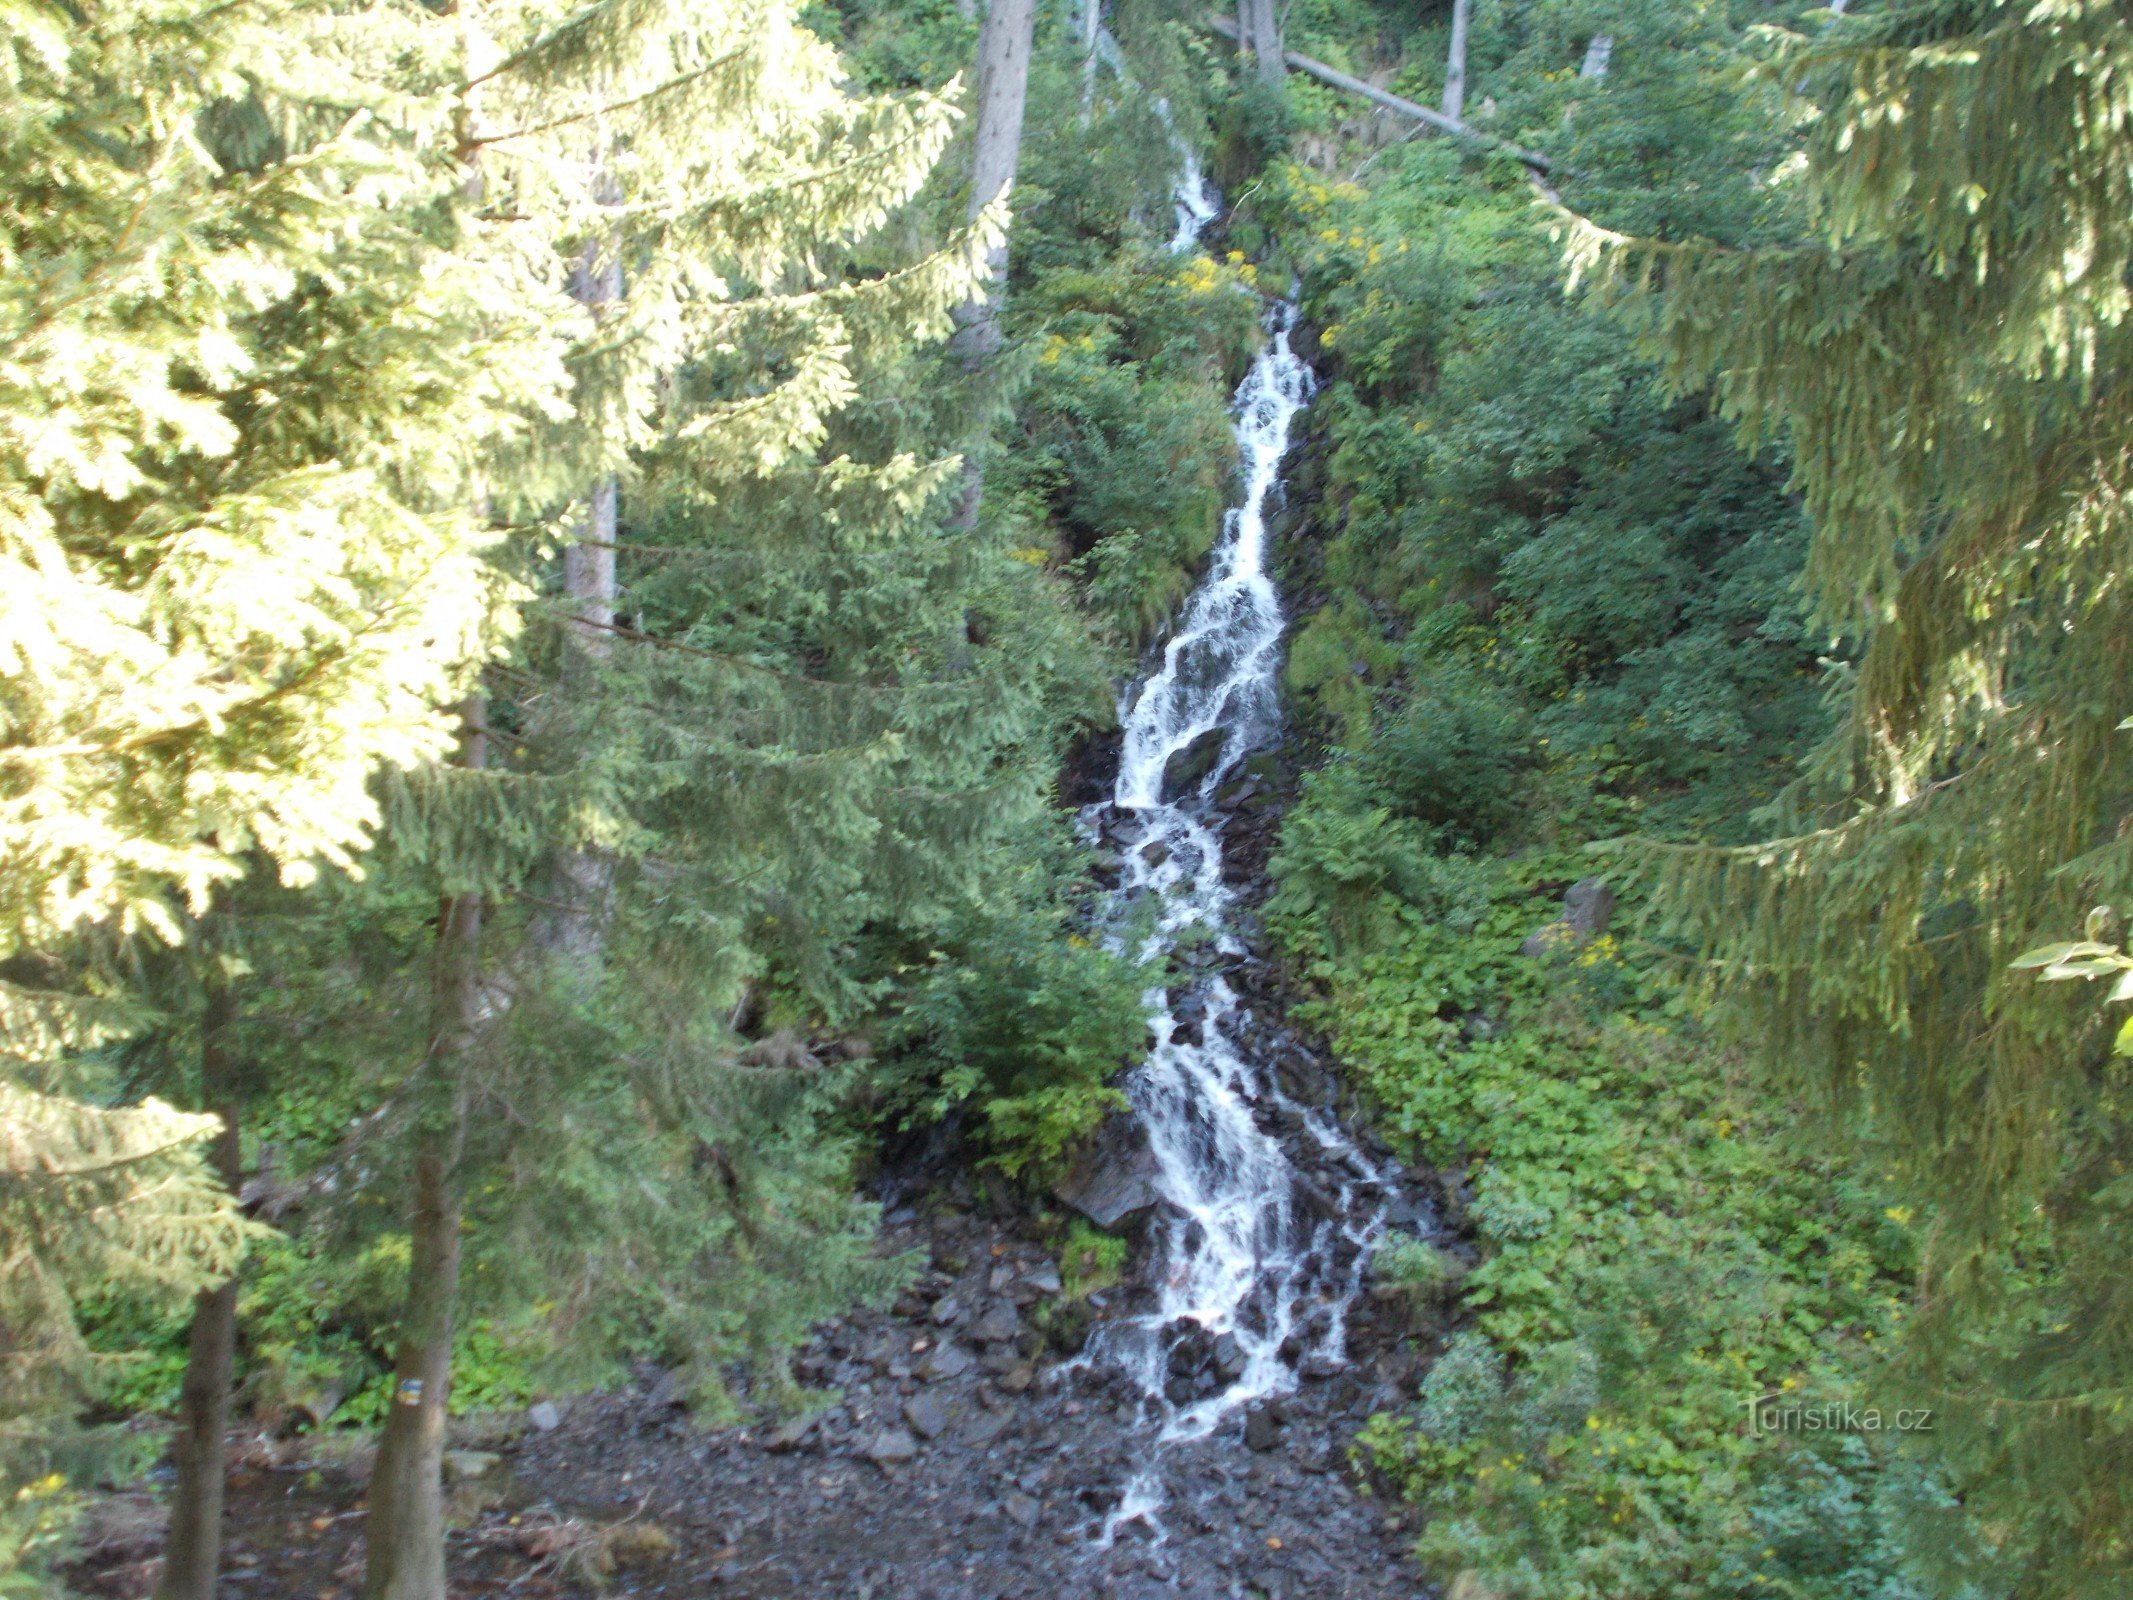 Искусственный водопад в Карлове Студанке